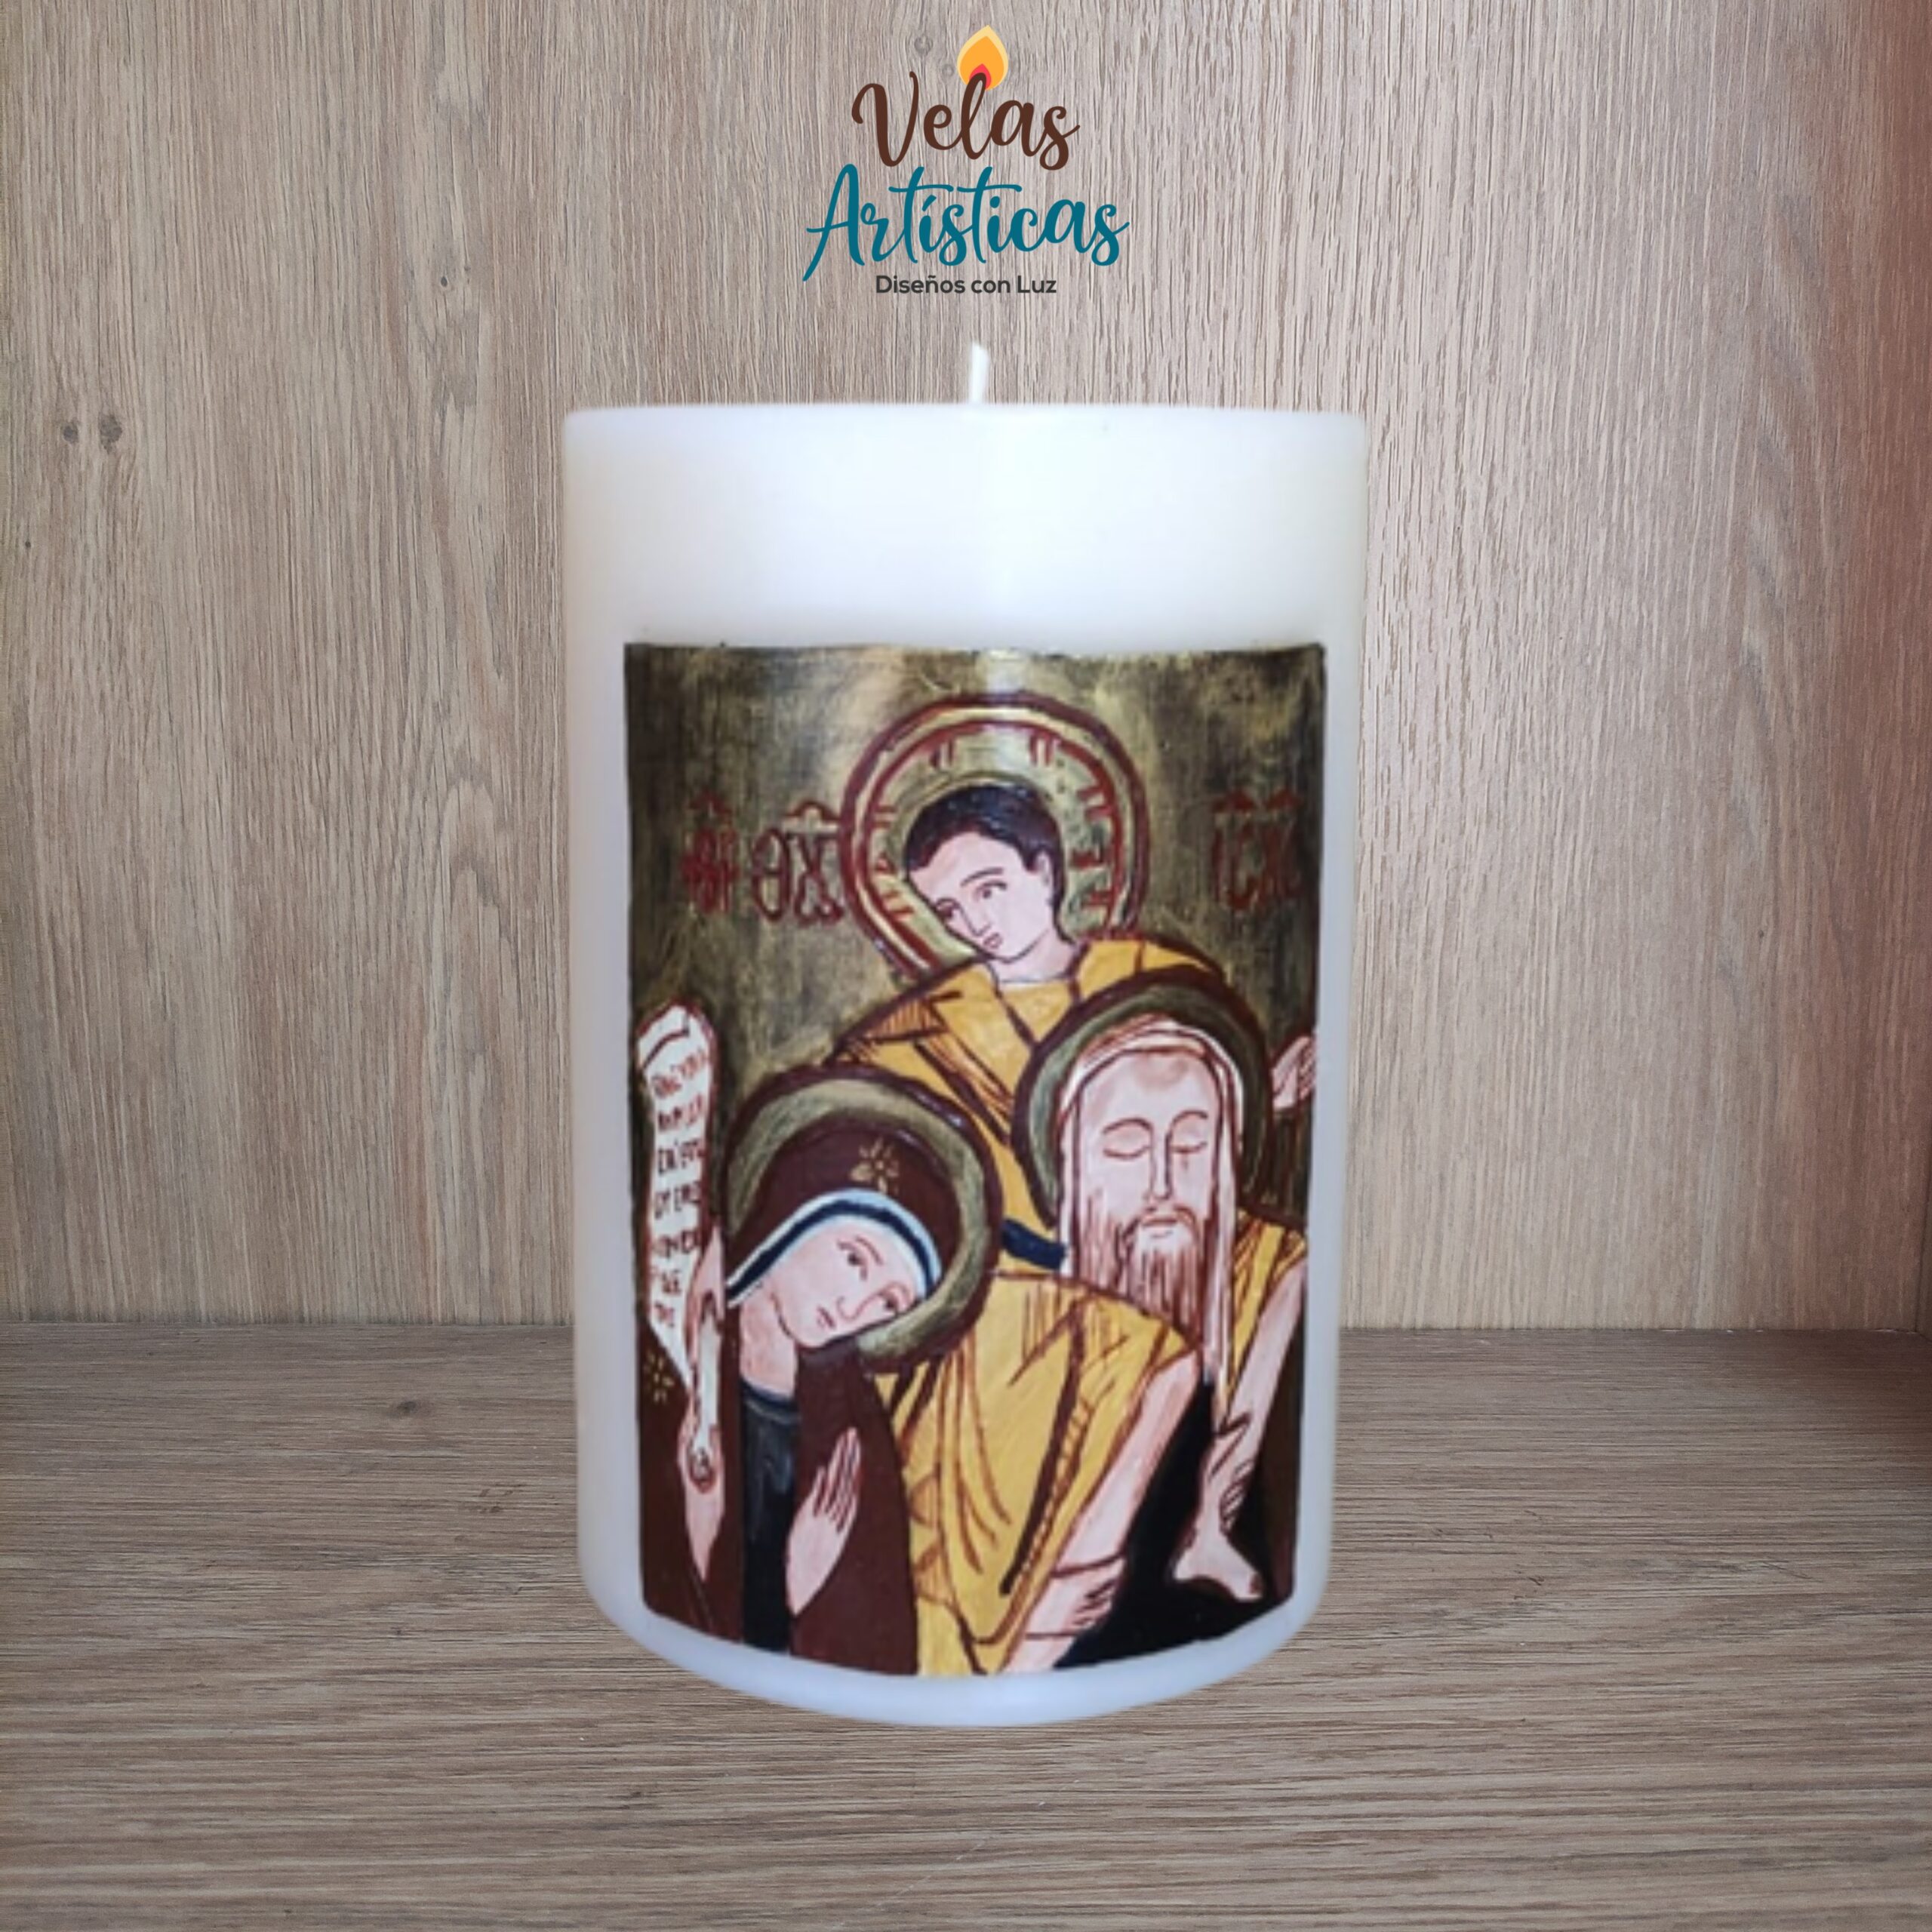 Sagrada familia de nazaret con técnica artística de la iconografía. Aparecen La Virgen María, San José y el niño Jesús que va sobre los hombros de su padre.